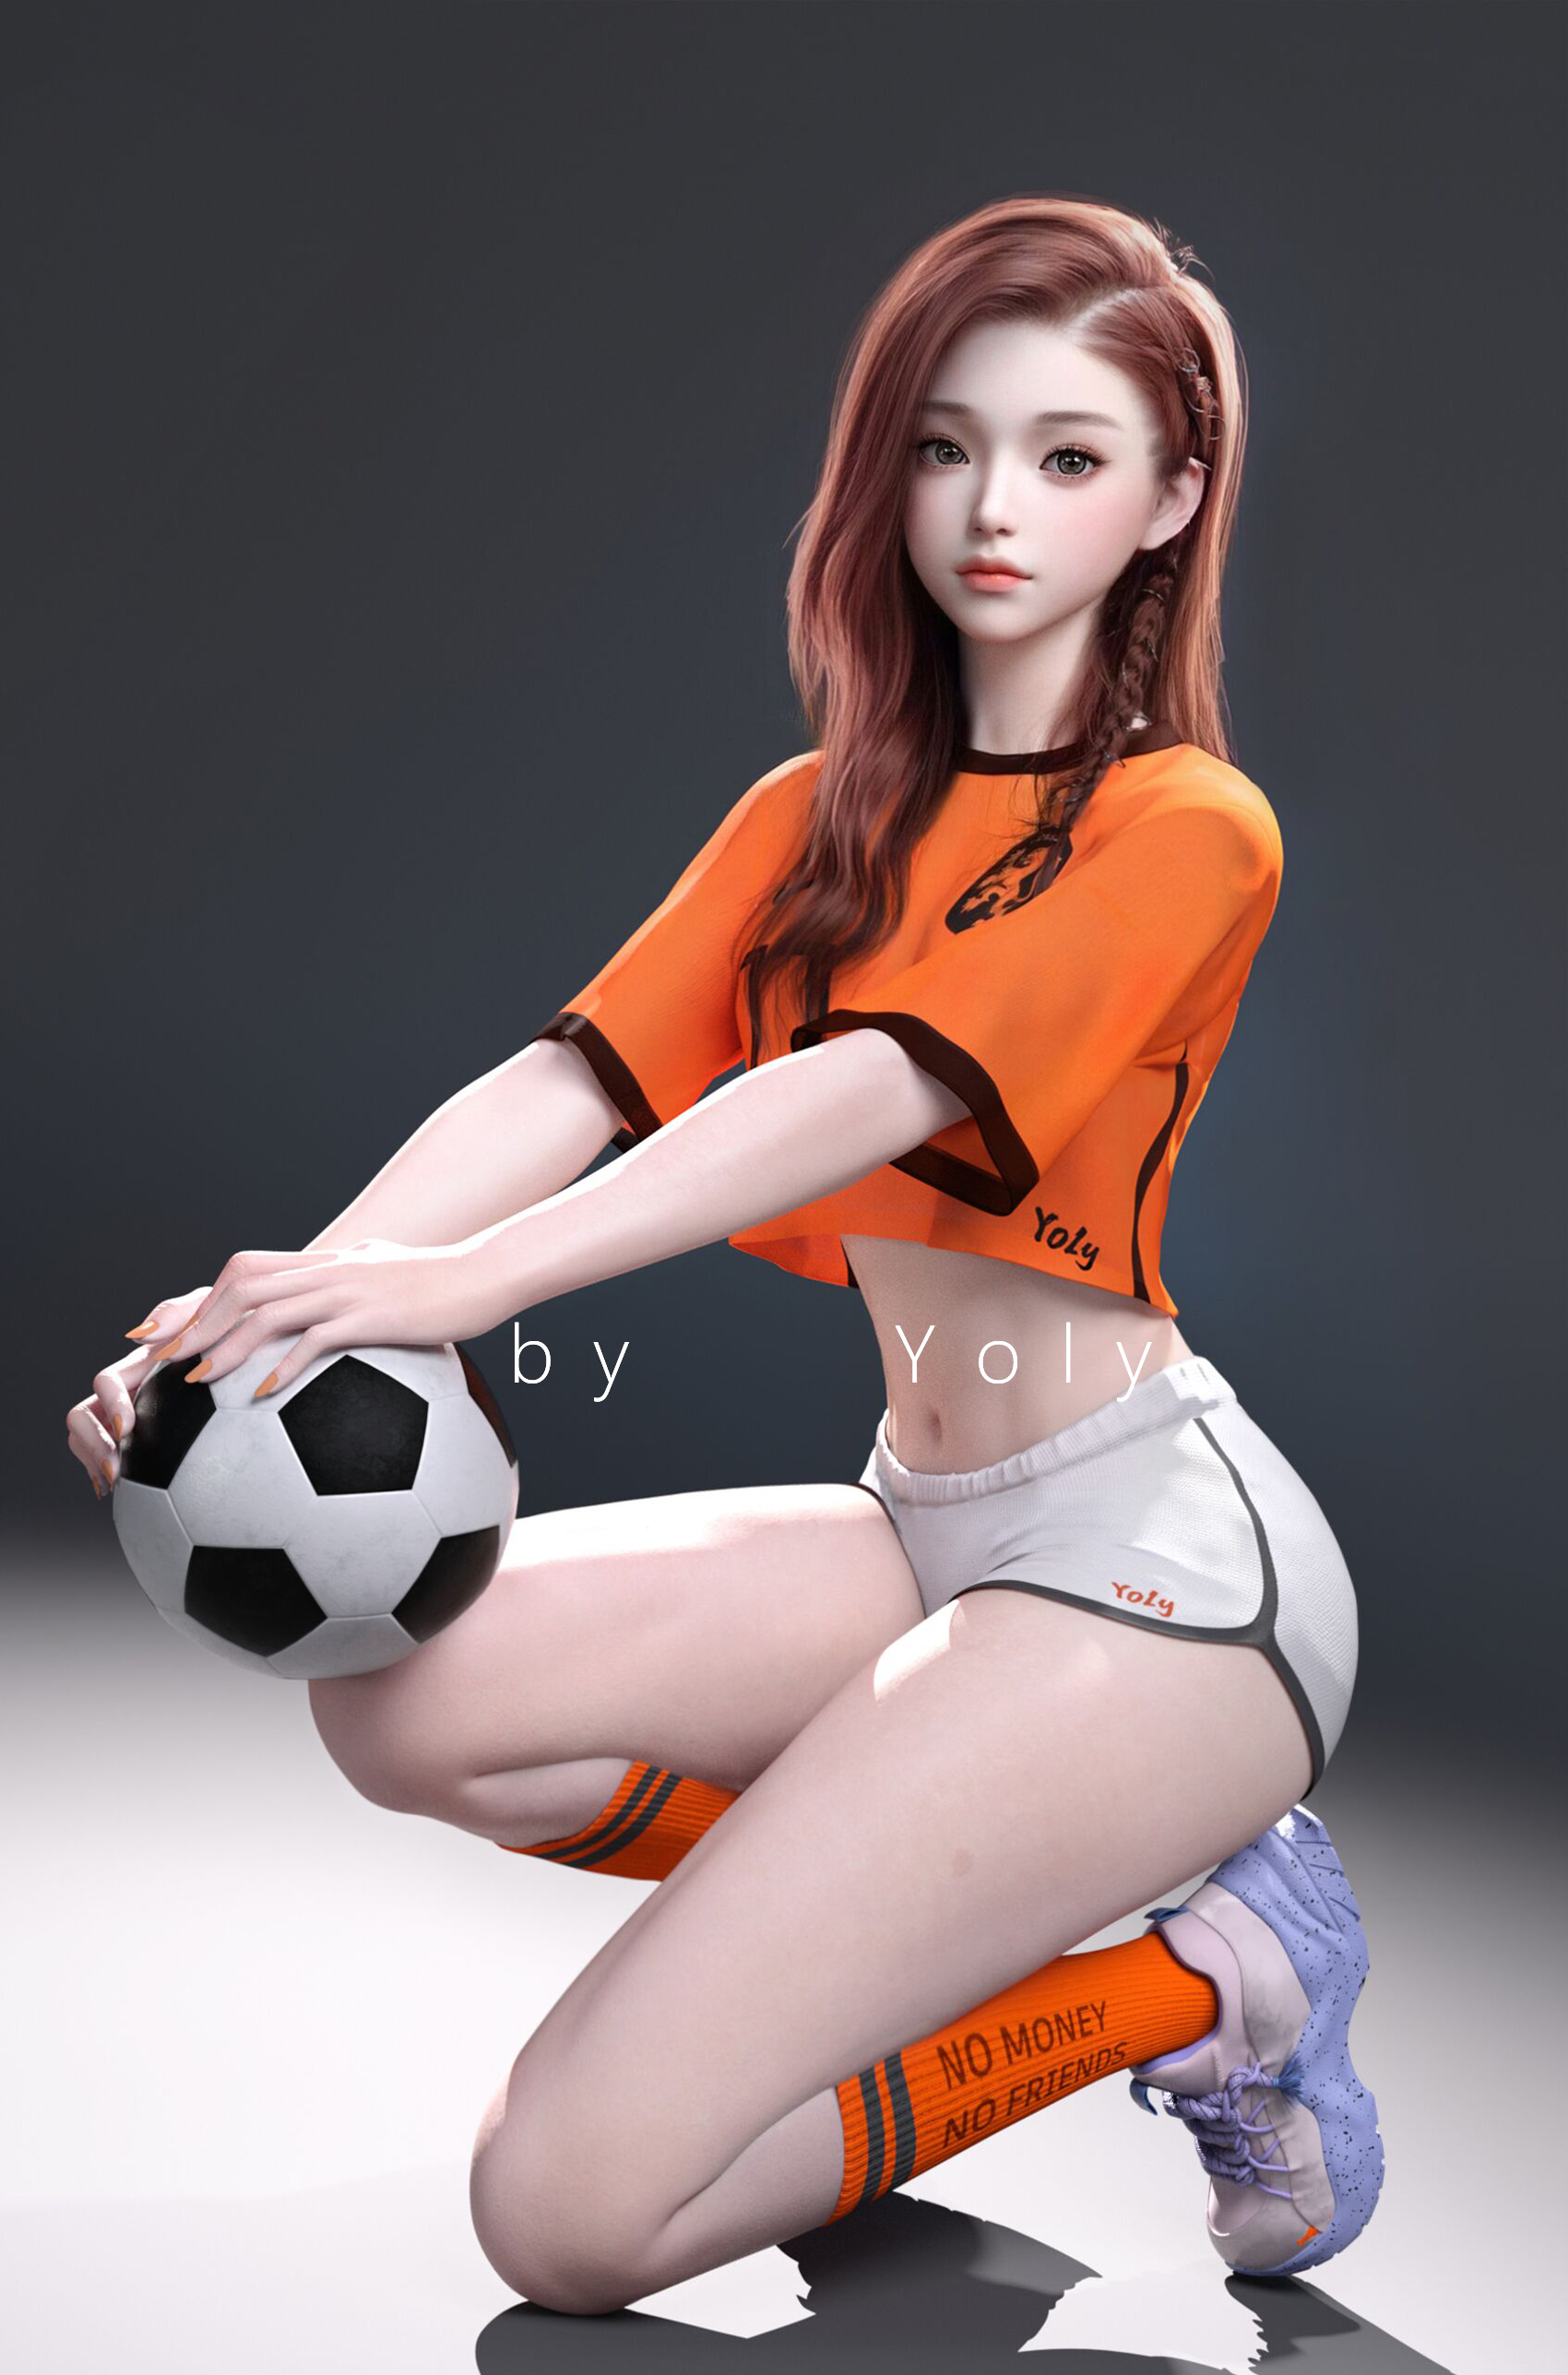 General 1700x2575 Yoly Netherlands soccer soccer girls soccer player Football  white bodysuit Asian CGI digital art artwork model portrait display short shorts